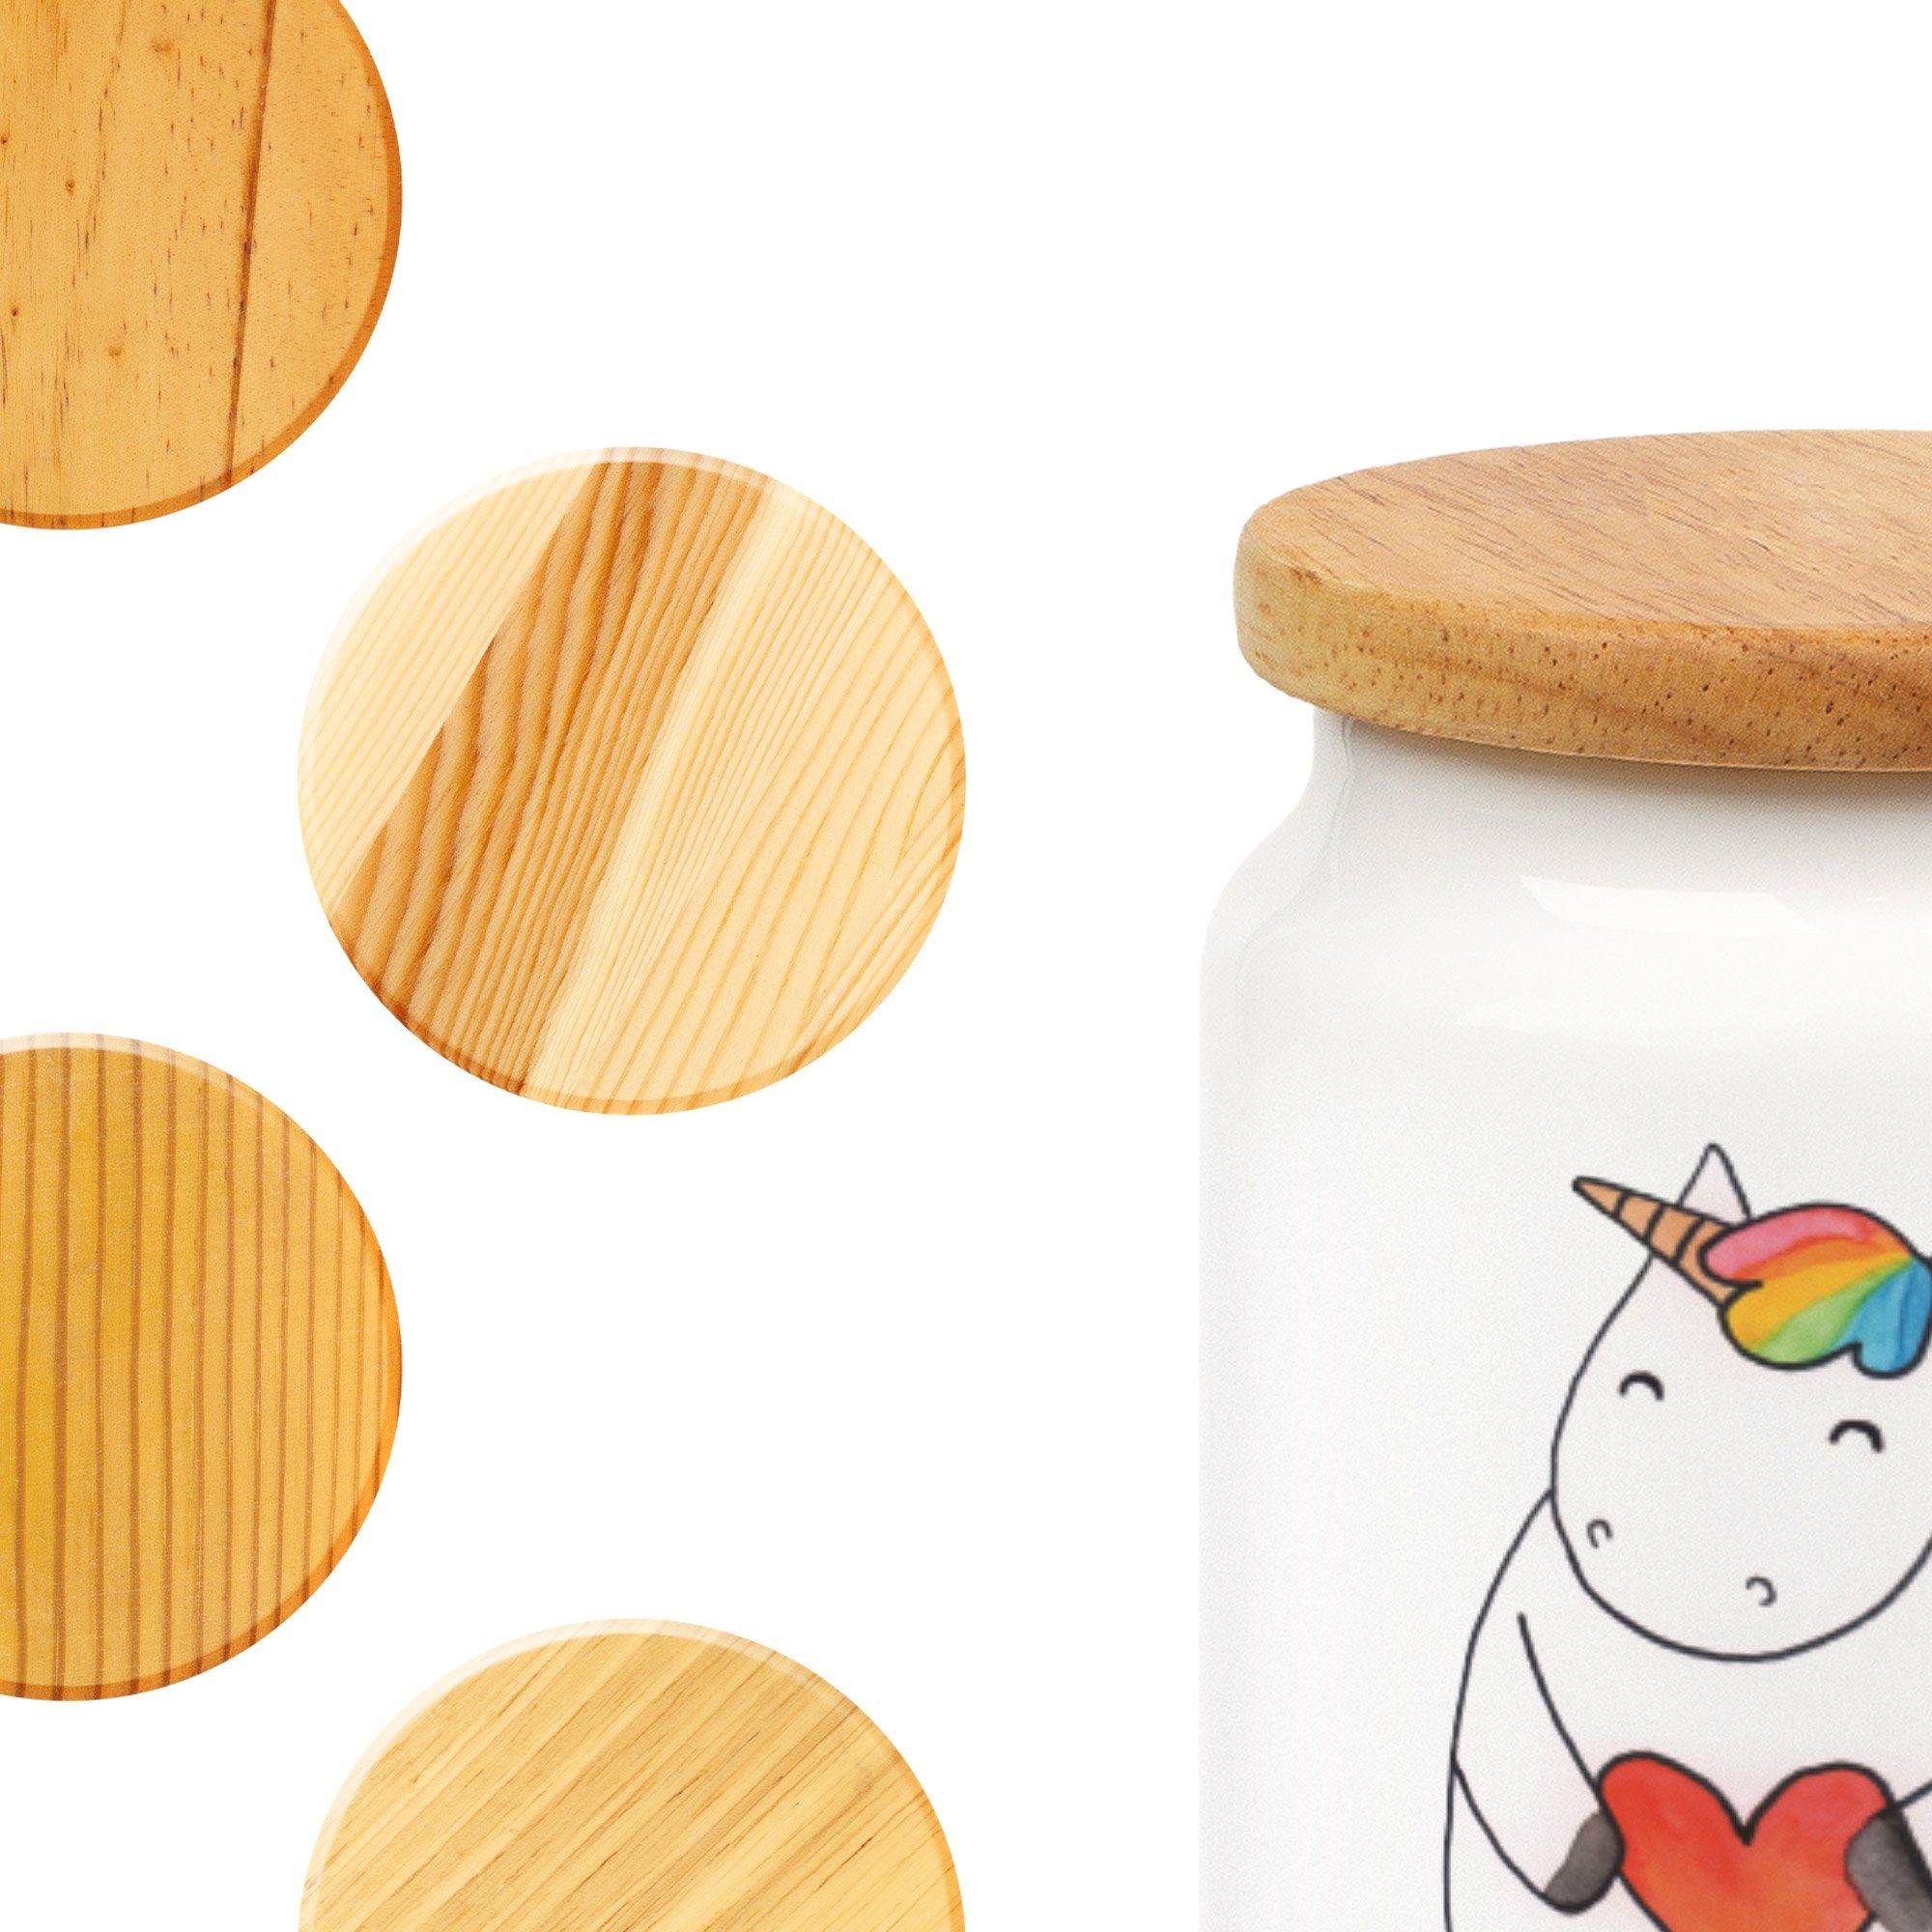 Mr. & Mrs. Panda Vorratsdose Keramik, (1-tlg) bunt, Einhorn - Geschenk, lustig, Weiß Keramikdose, Herz - Einhörner